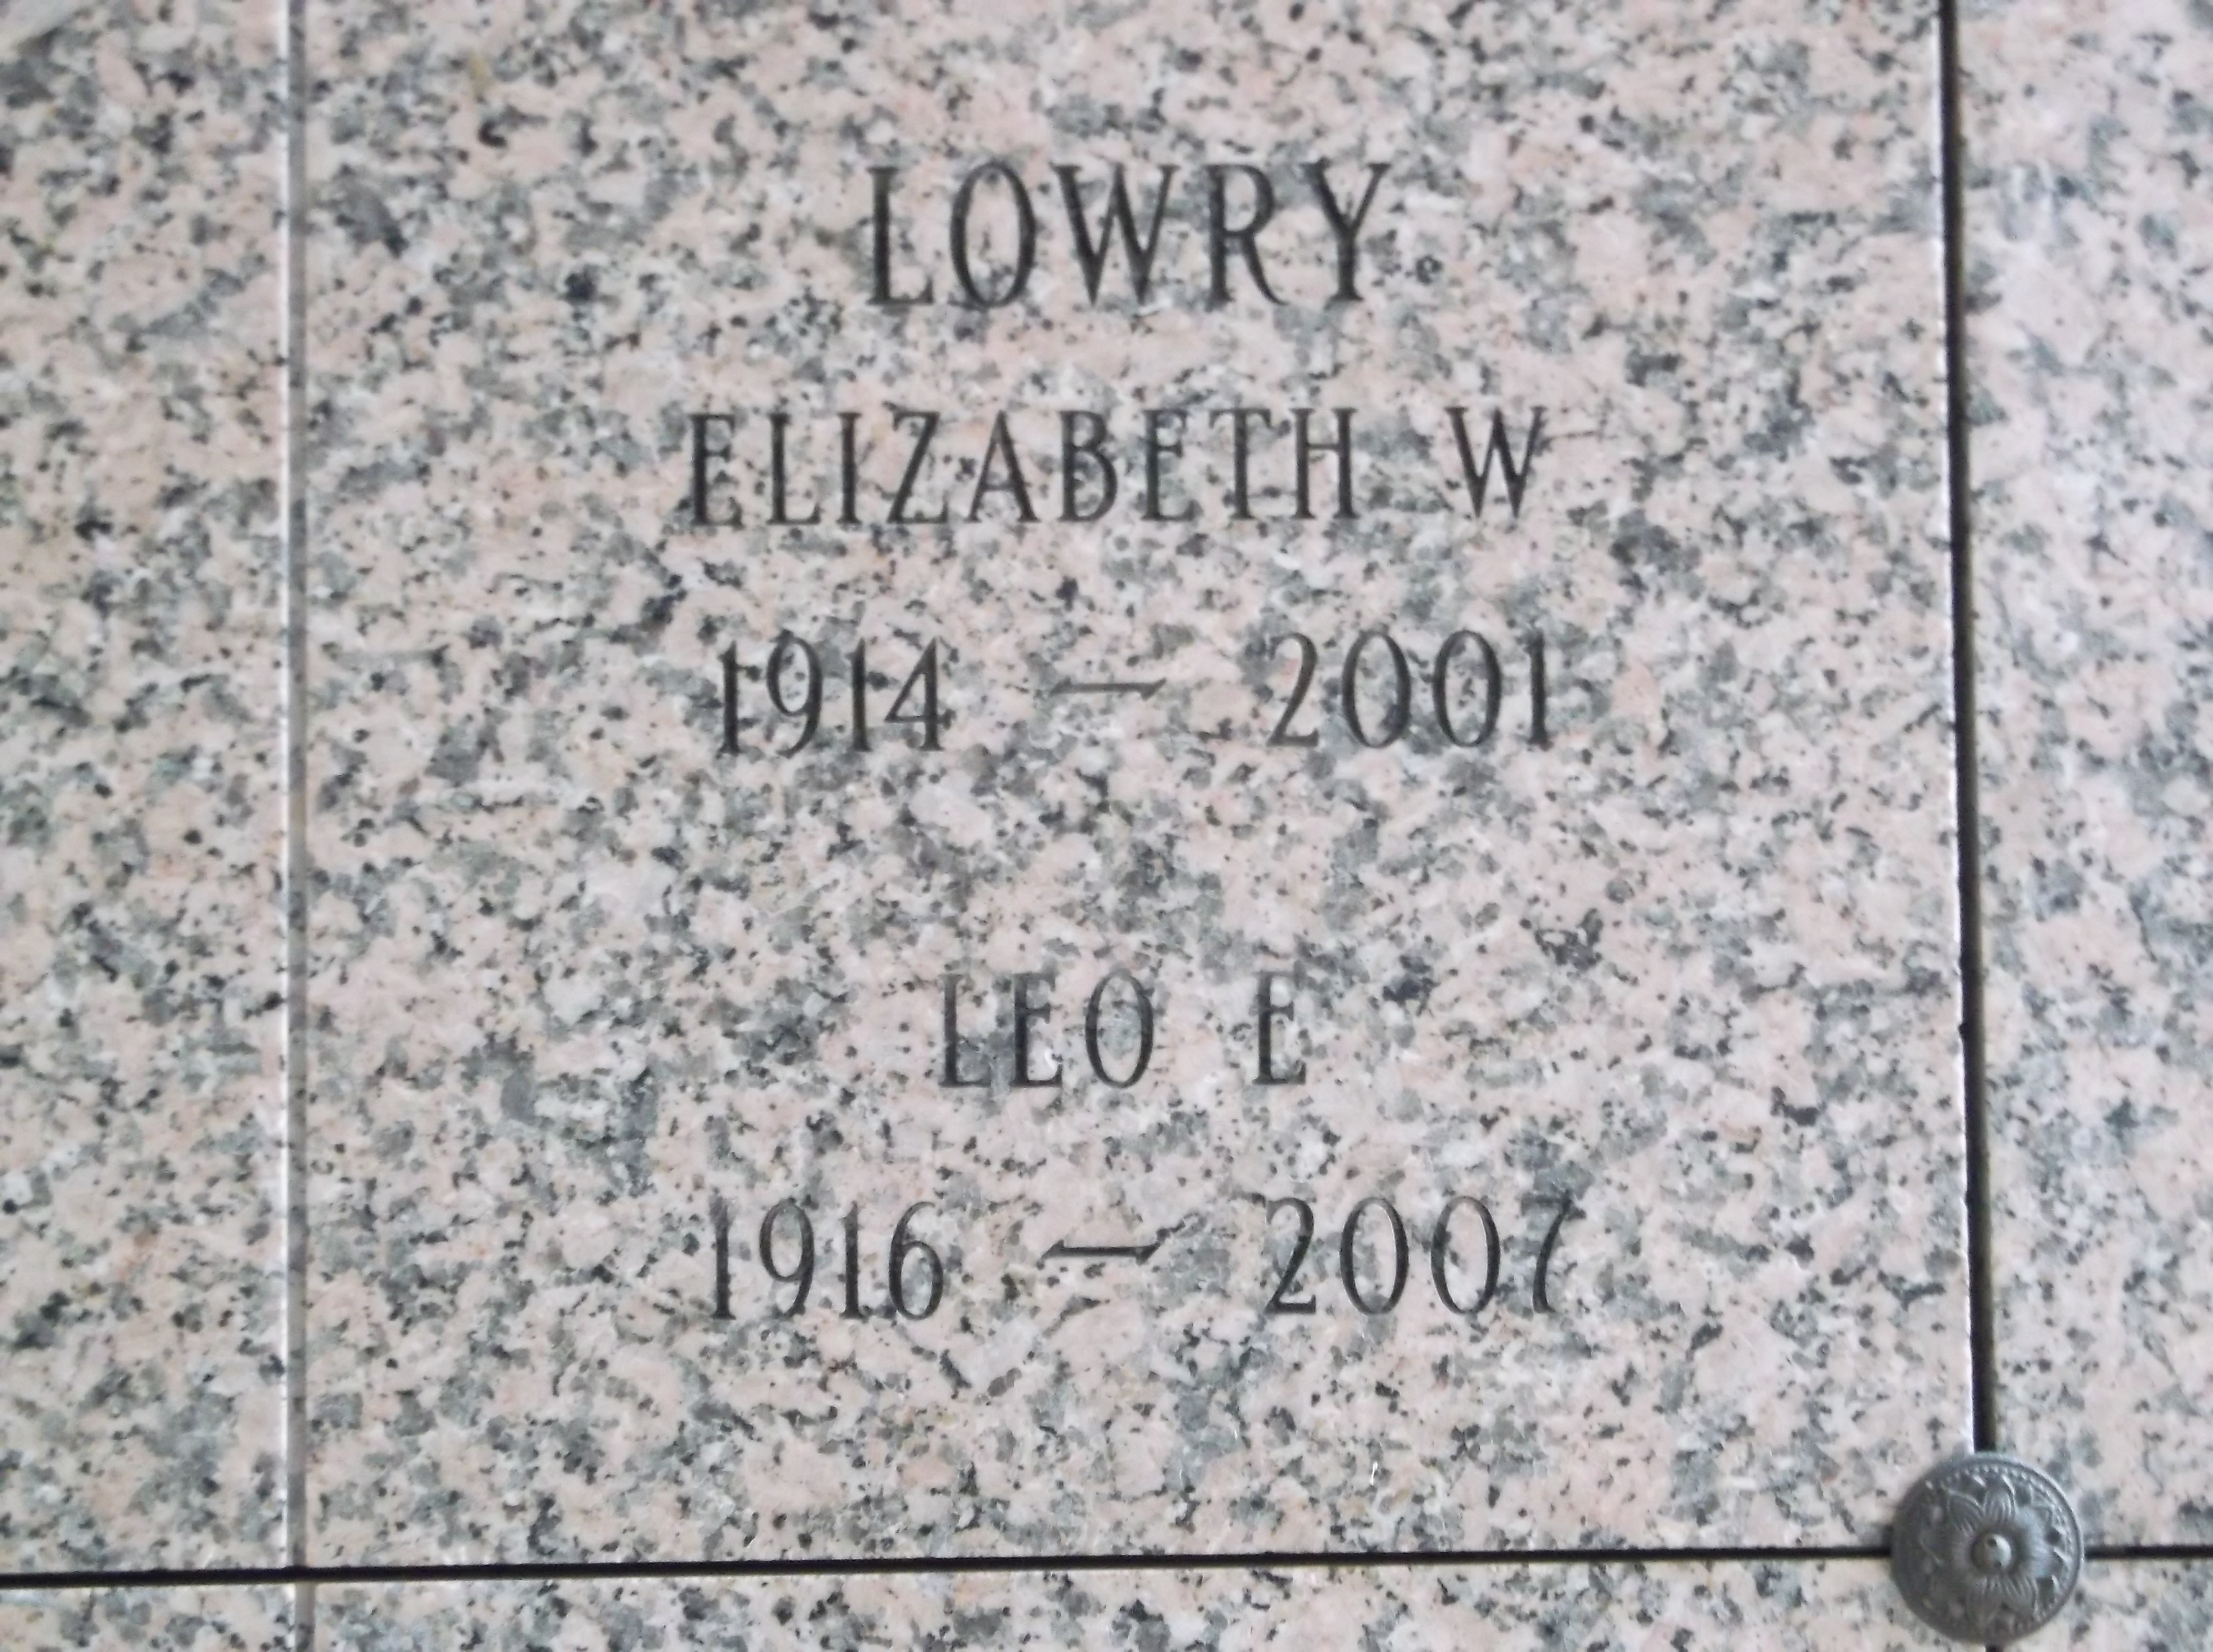 Elizabeth W Lowry